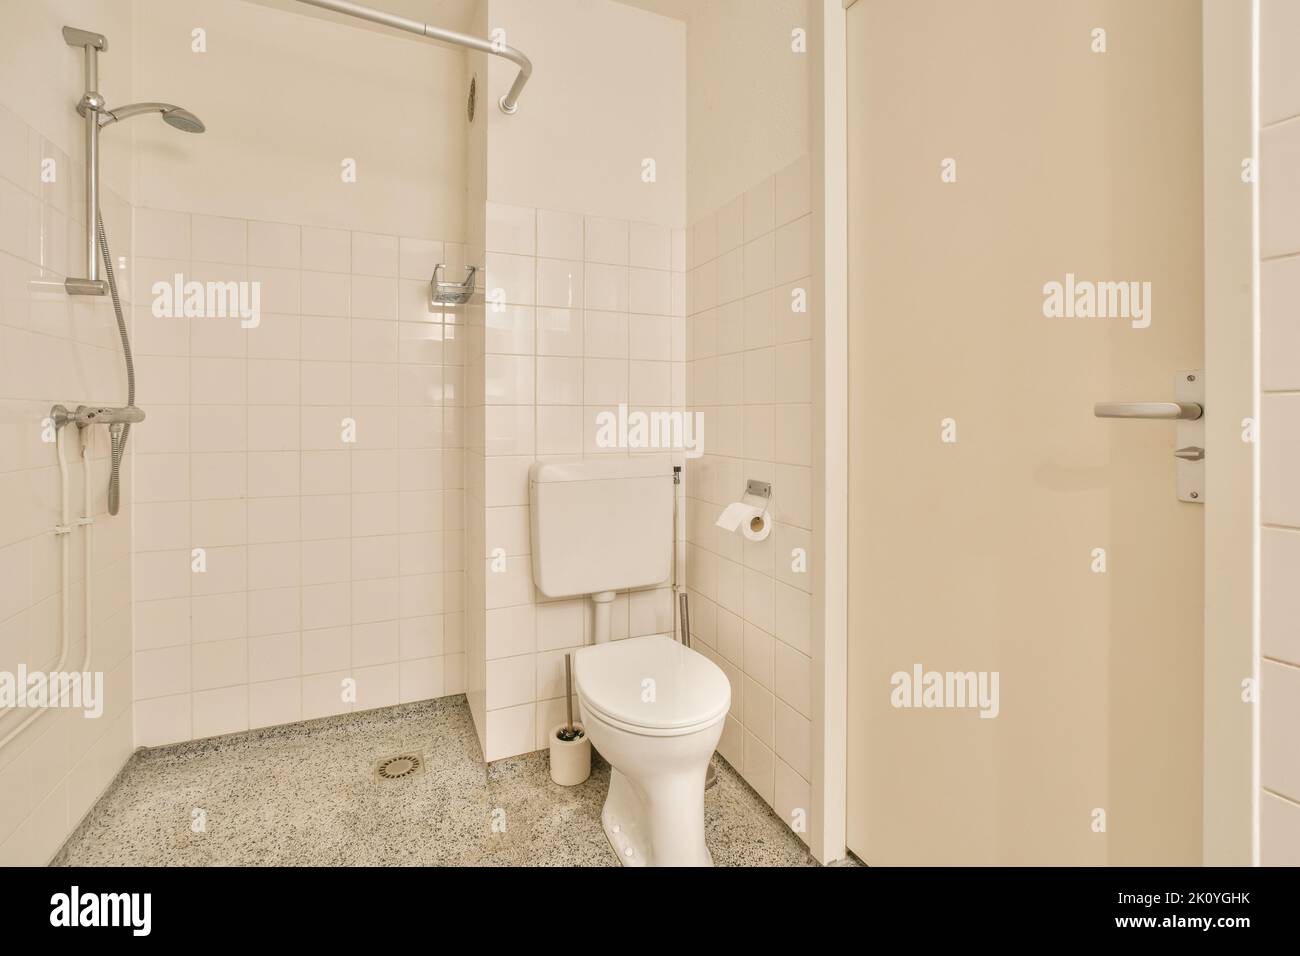 Toilettes et douche à chasse d'eau situées près de l'évier et de la machine à laver dans les toilettes à la maison Banque D'Images